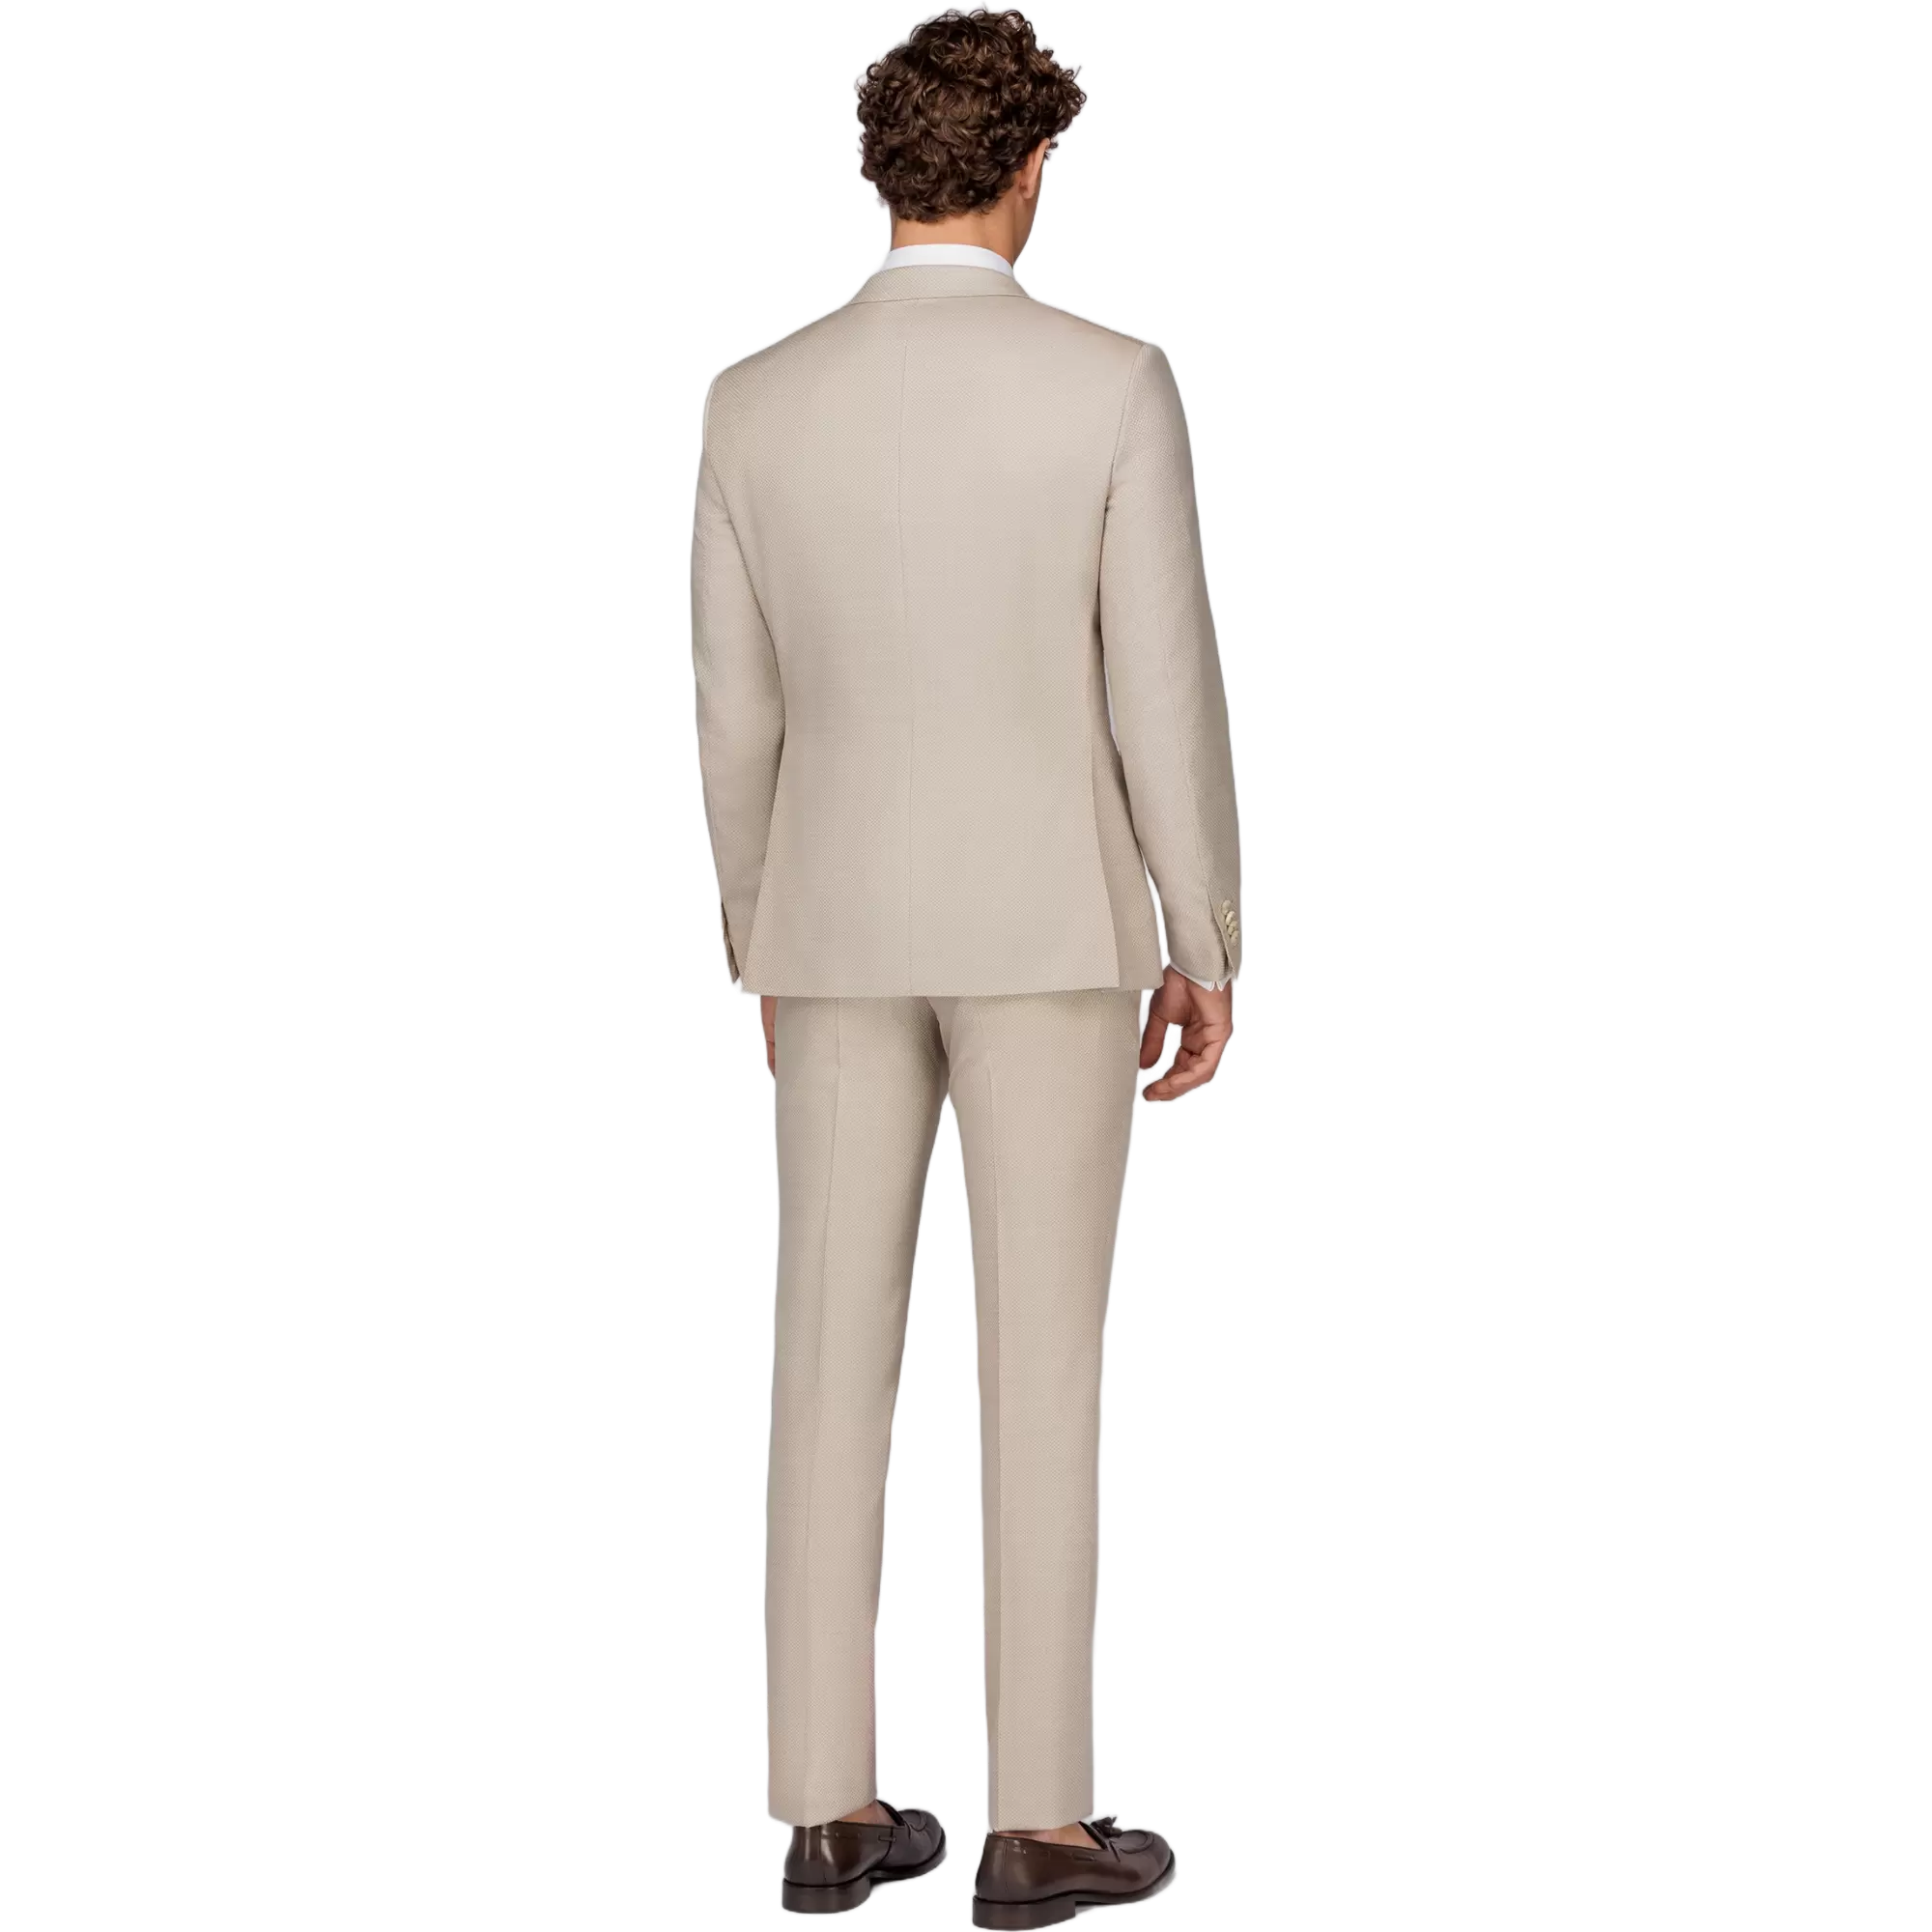 Ανδρικό Κοστούμι Με Γιλέκο Μπεζ Tailor Italian Wear